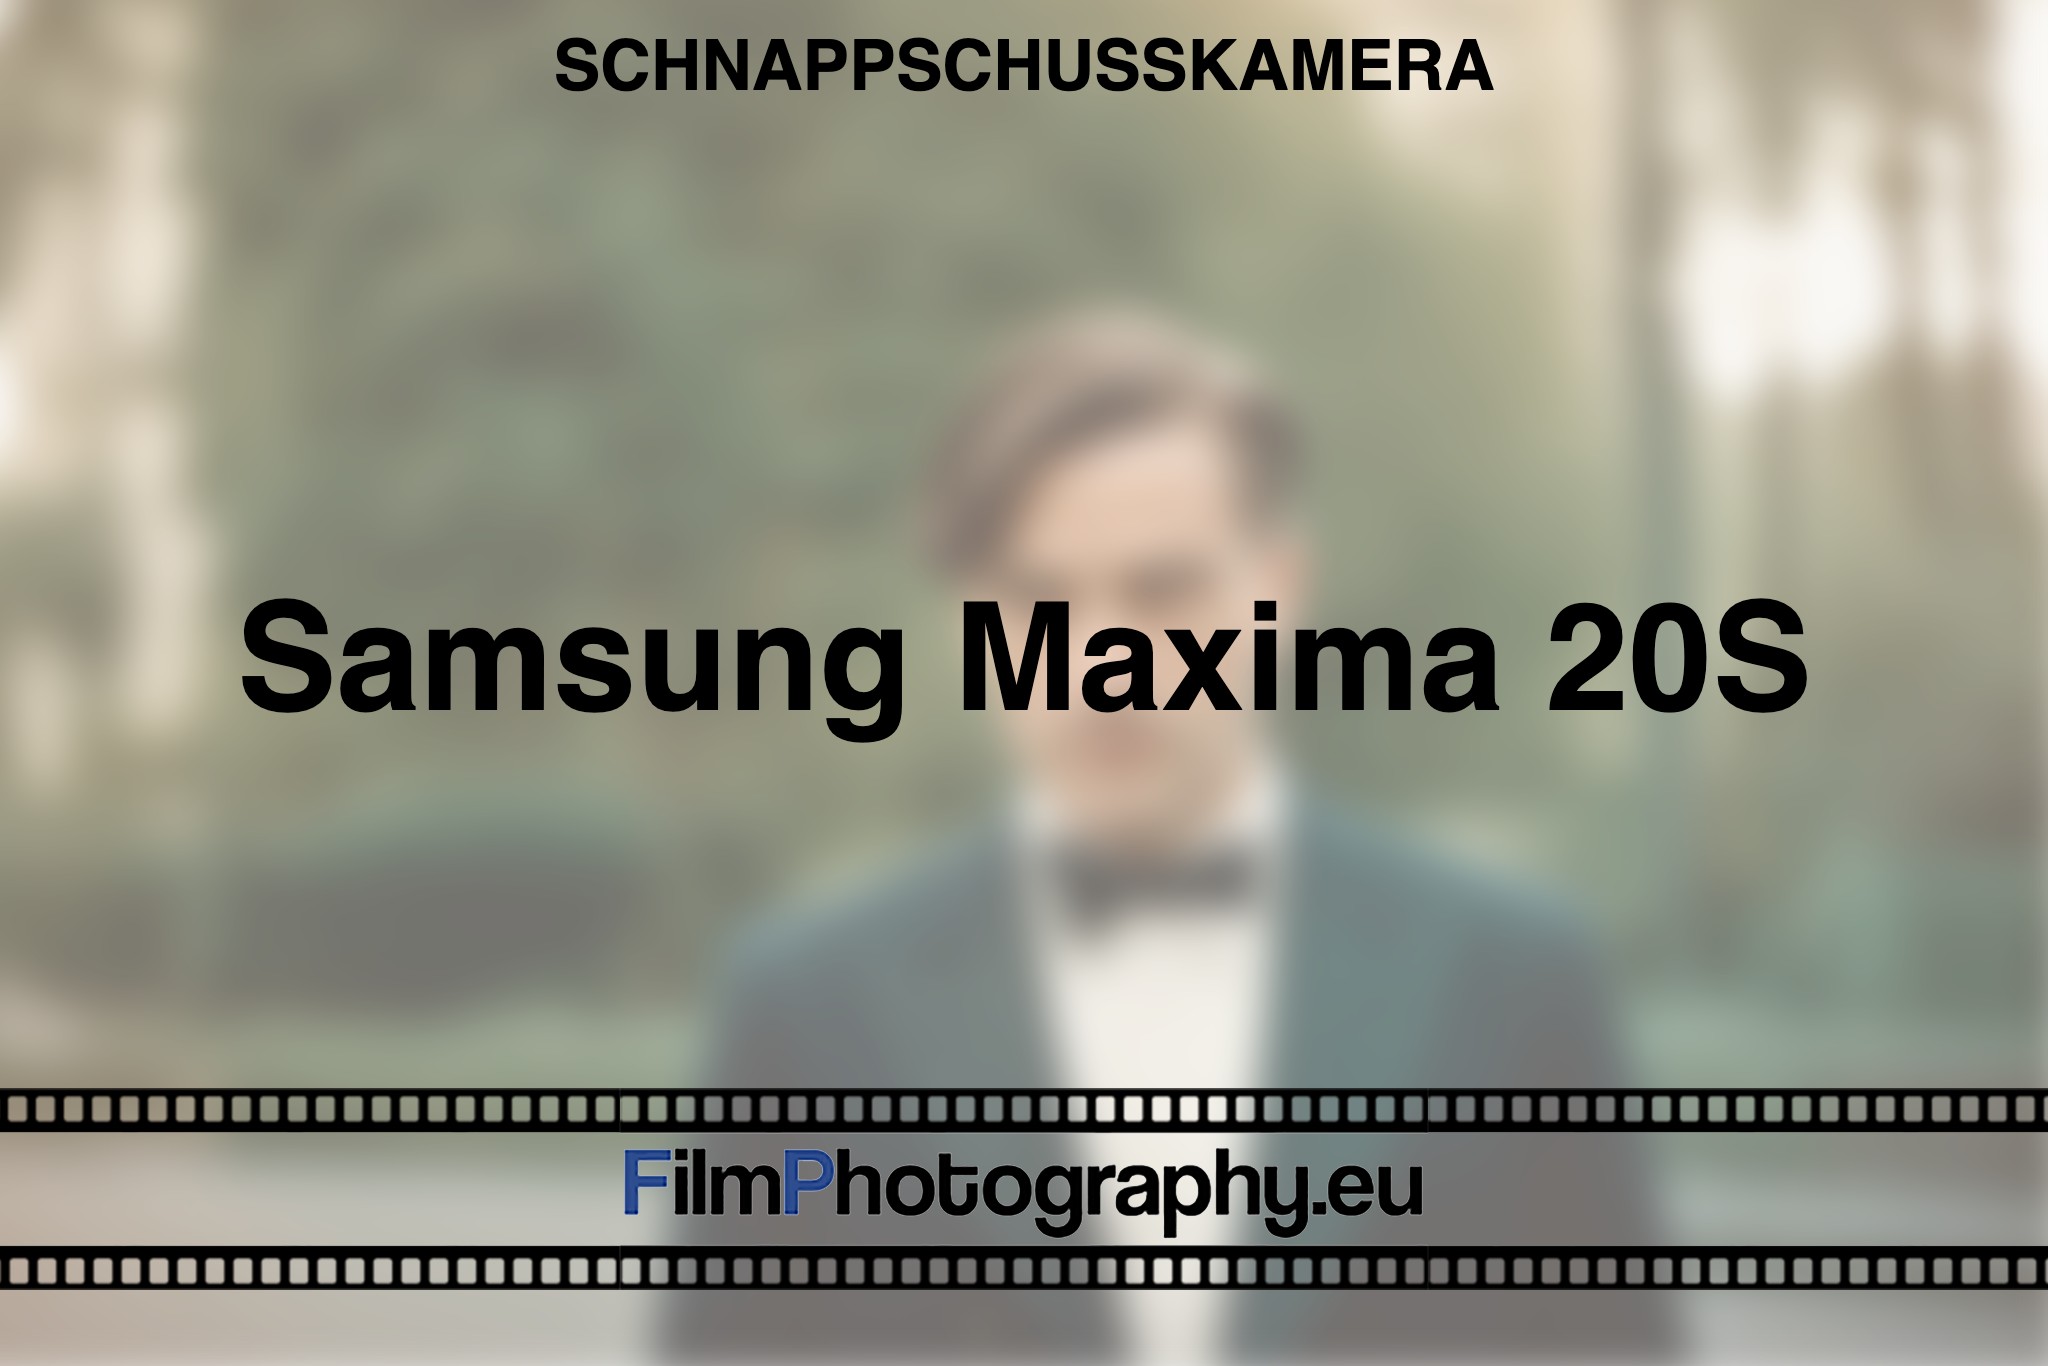 samsung-maxima-20s-schnappschusskamera-bnv